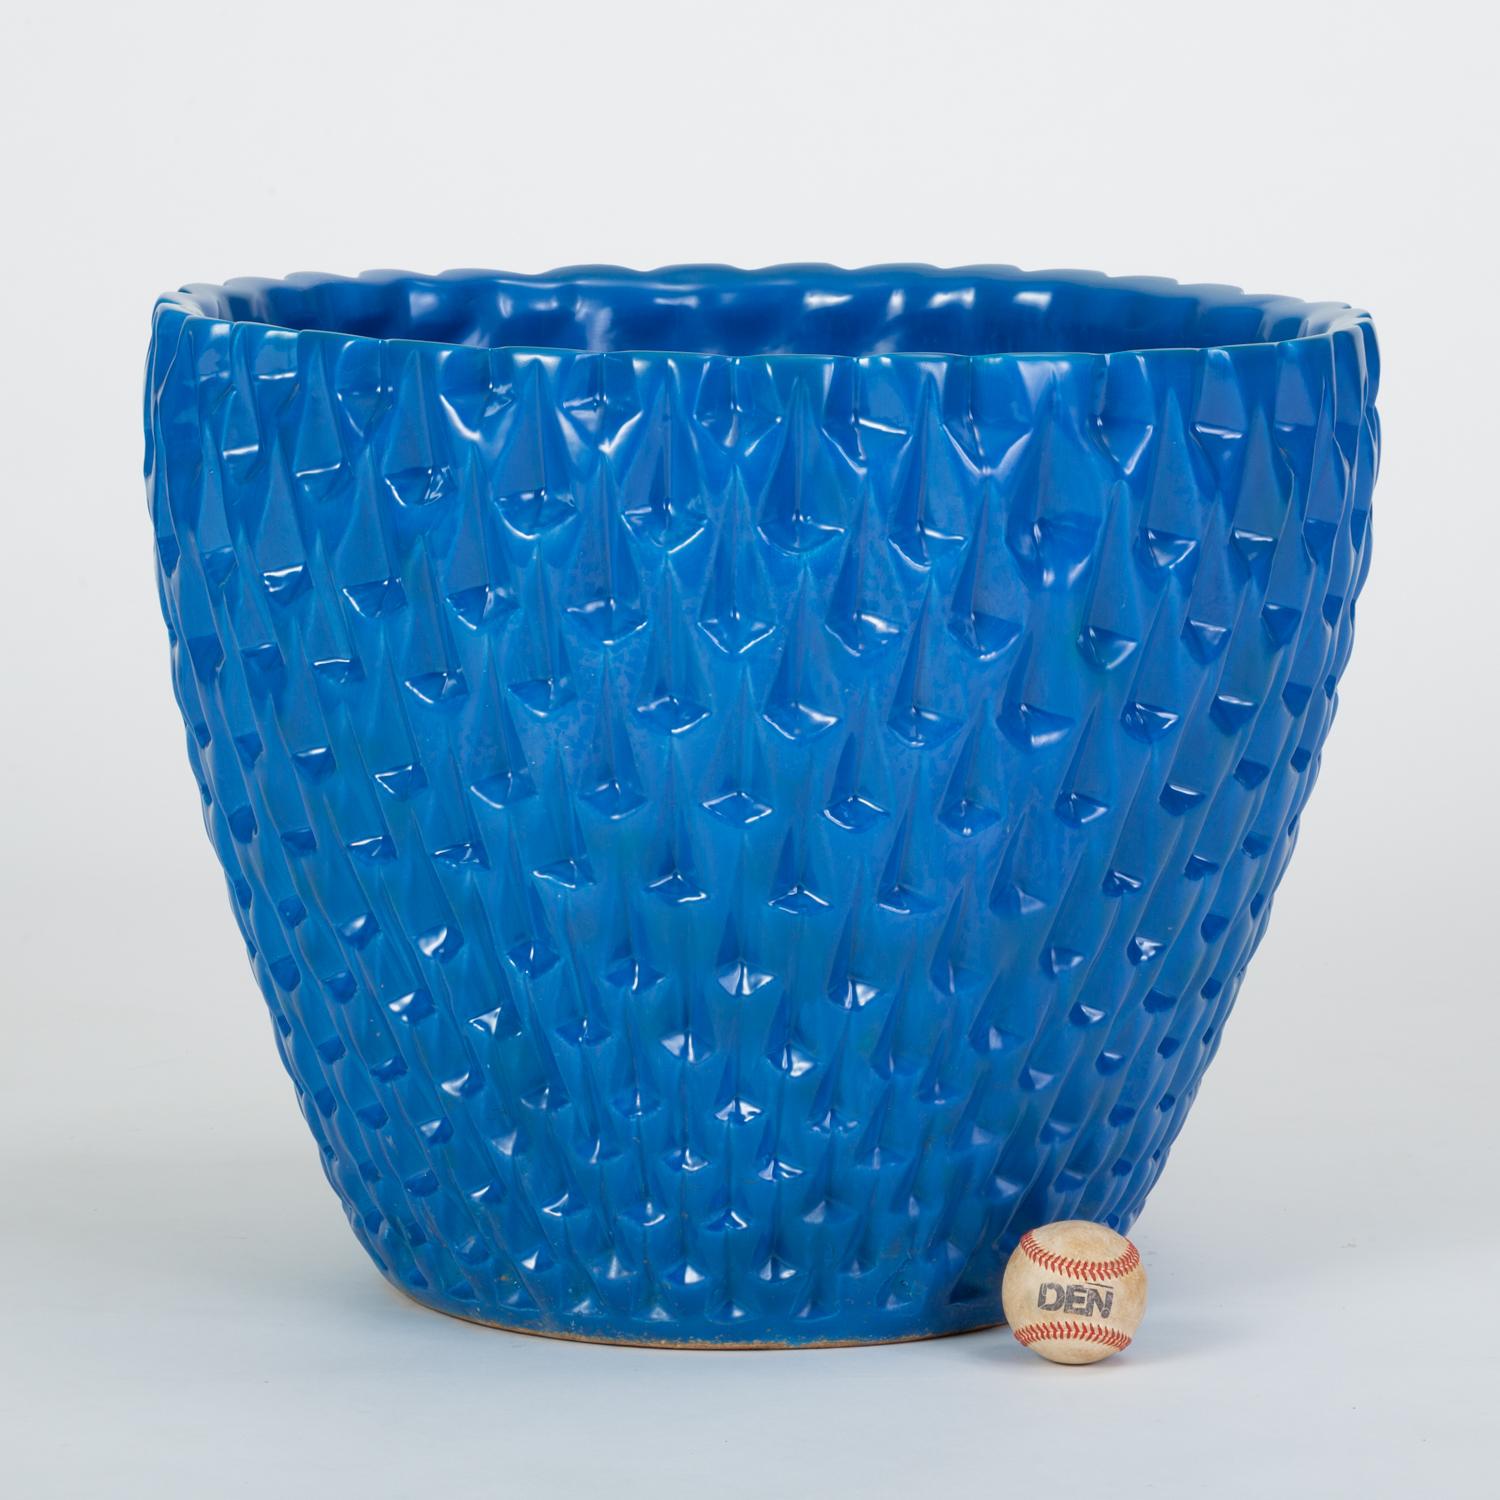 Das 1963 von David Cressey als Teil der Pro/Artisan-Steinzeugkollektion für Architectural Pottery entworfene Pflanzgefäß Phoenix hat die Form einer Schale mit einem geometrischen Relief. Dieses Exemplar hat eine azurblaue Glasur mit glänzender